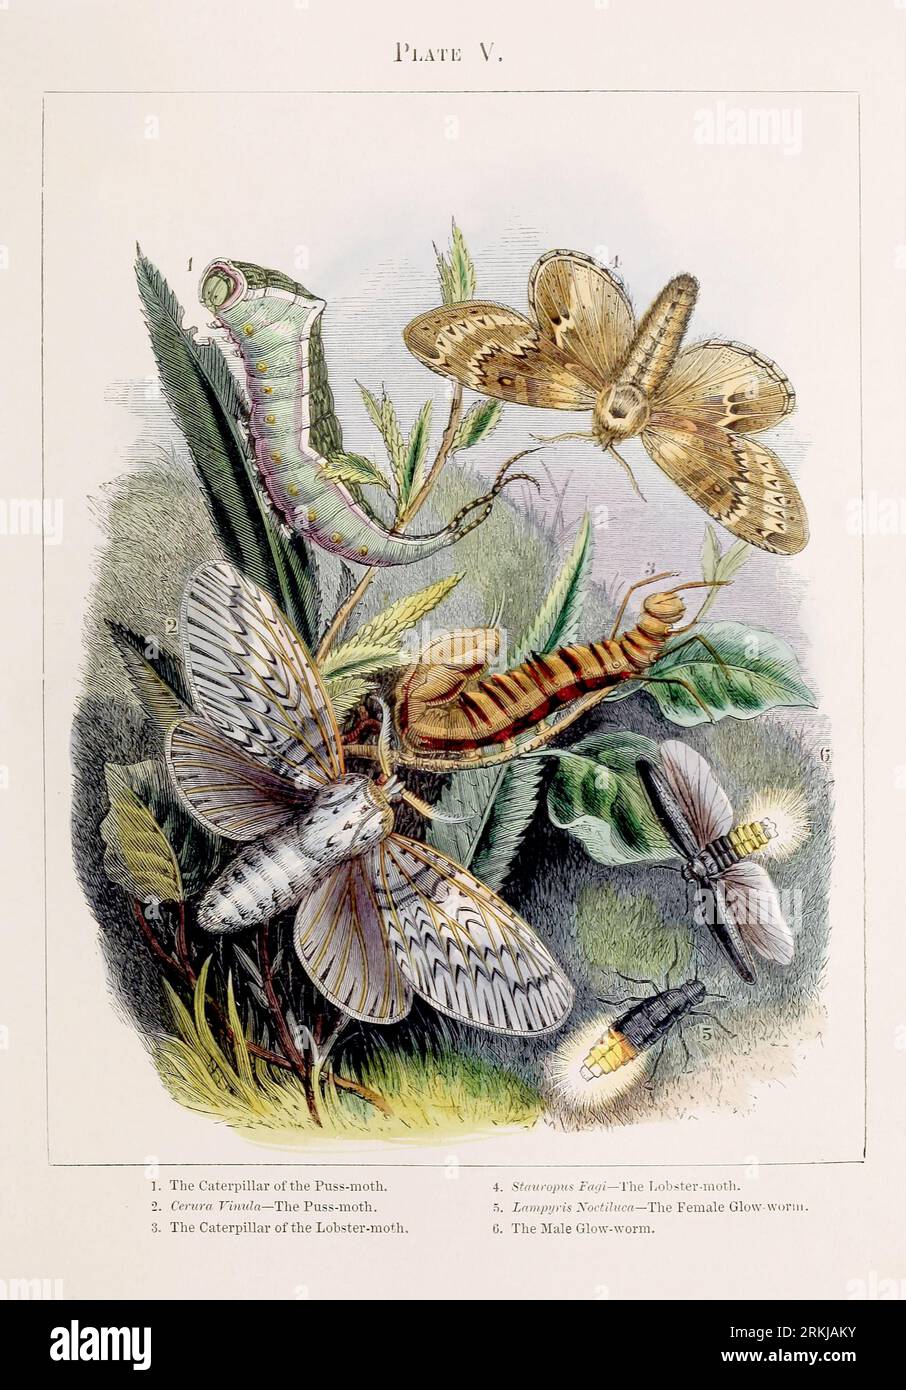 Falene. Illustrazione colorata delle curiose metamorfosi di alcuni degli insetti più belli, ca. 1850 Foto Stock